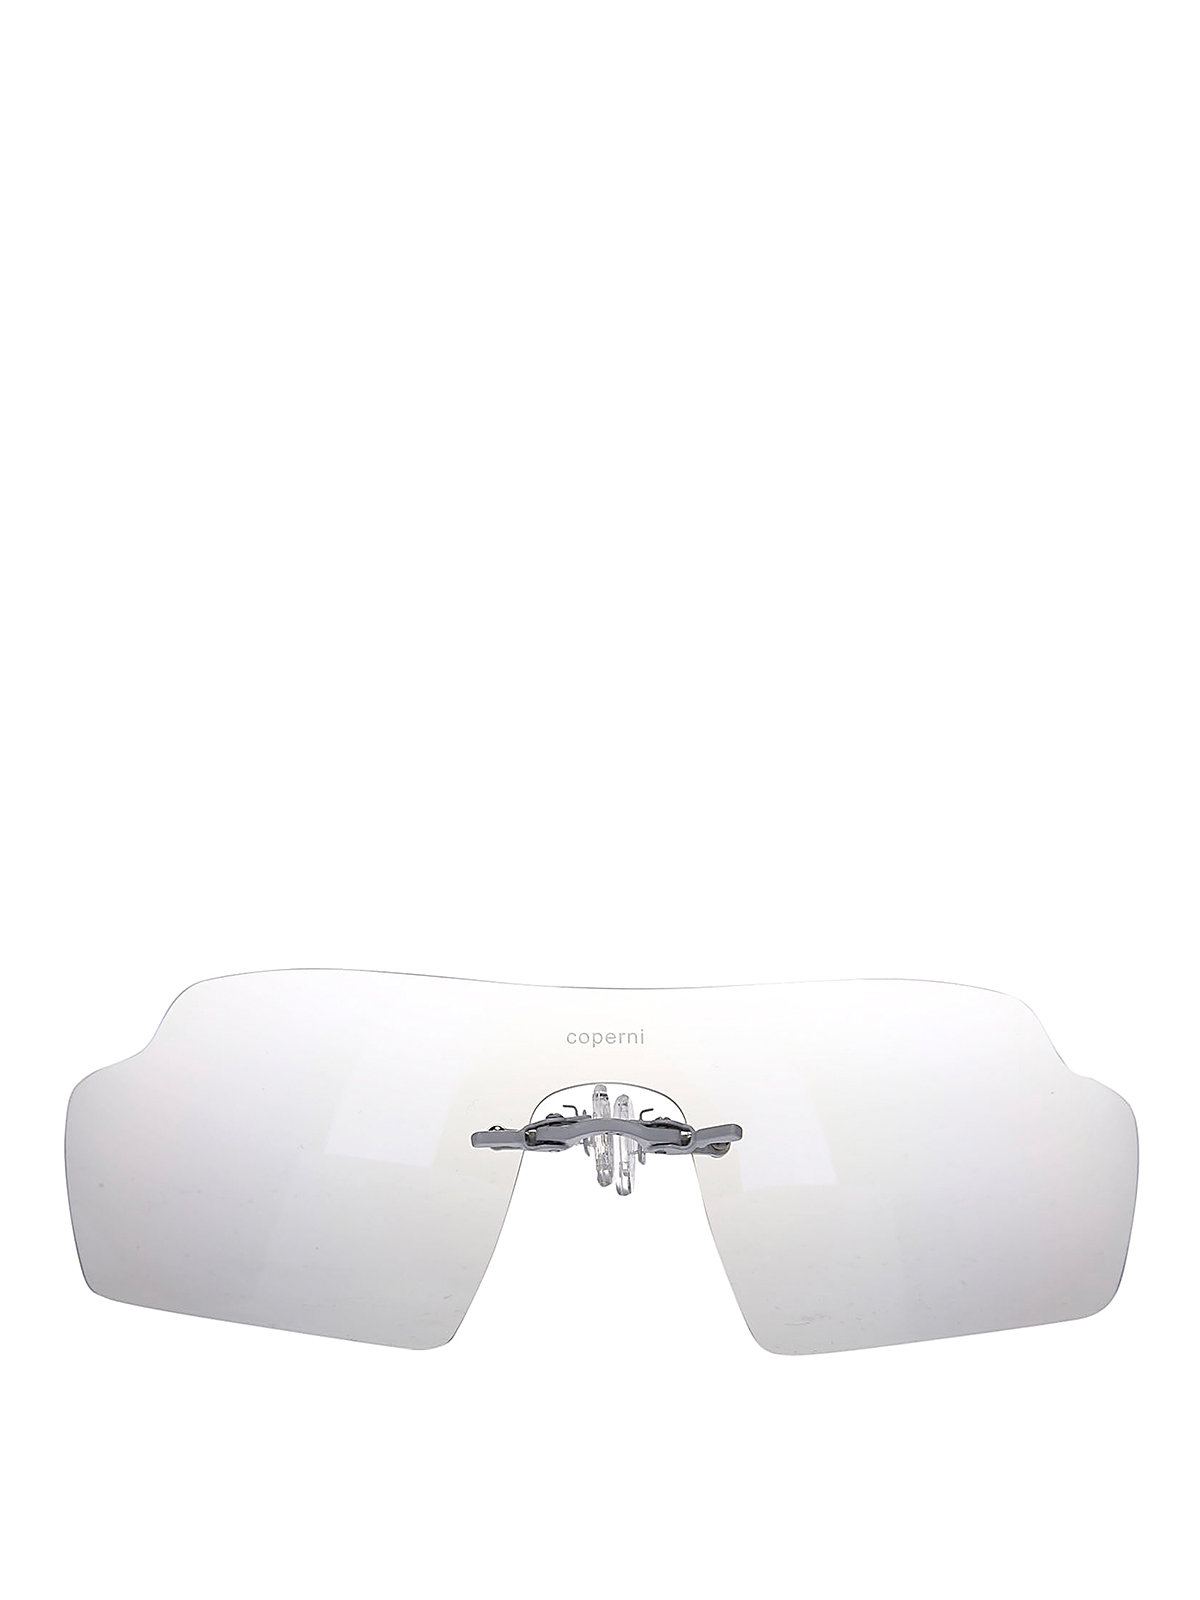 Coperni Clip On Sunglasses In White